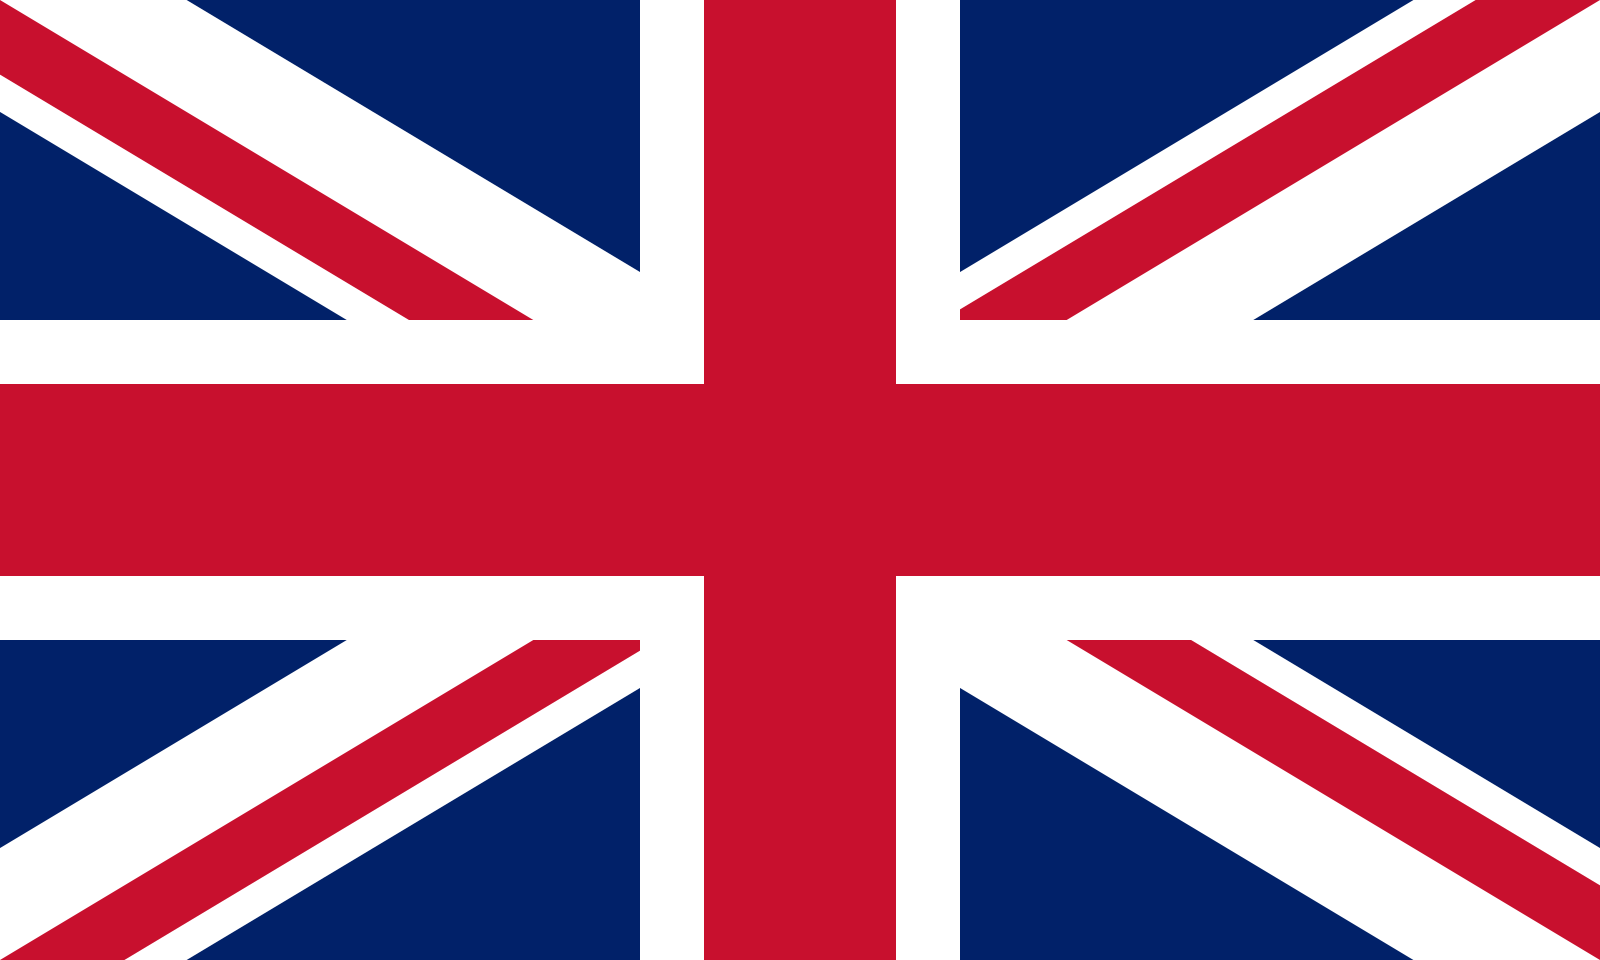 British Accent